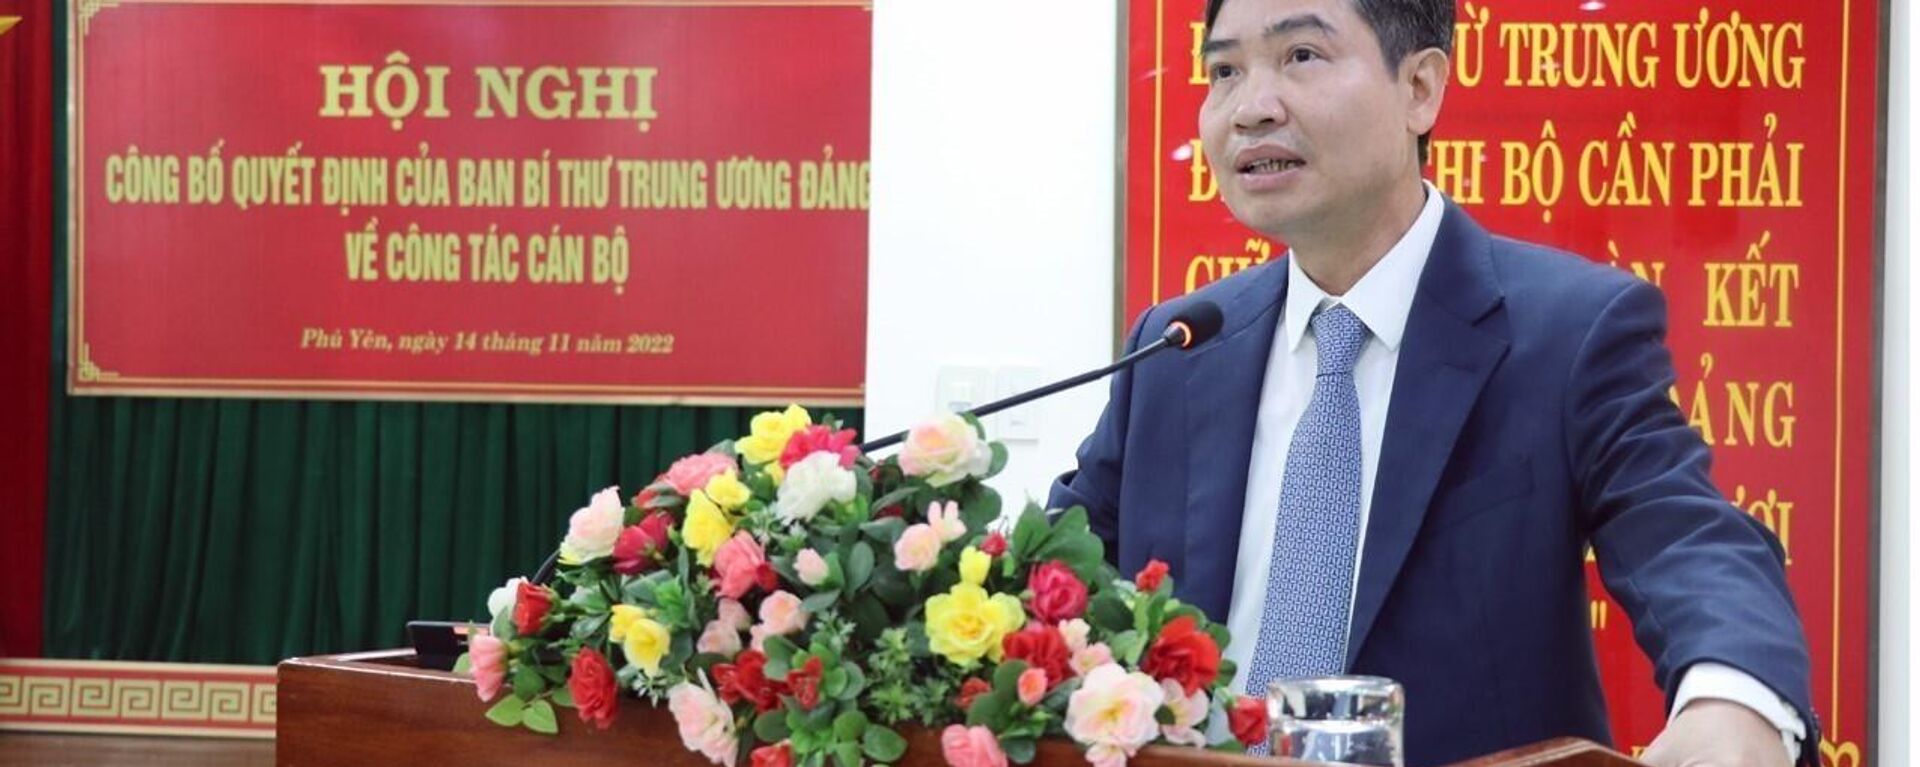 Phú Yên: Công bố quyết định của Ban Bí thư Trung ương Đảng về công tác cán bộ - Sputnik Việt Nam, 1920, 14.11.2022